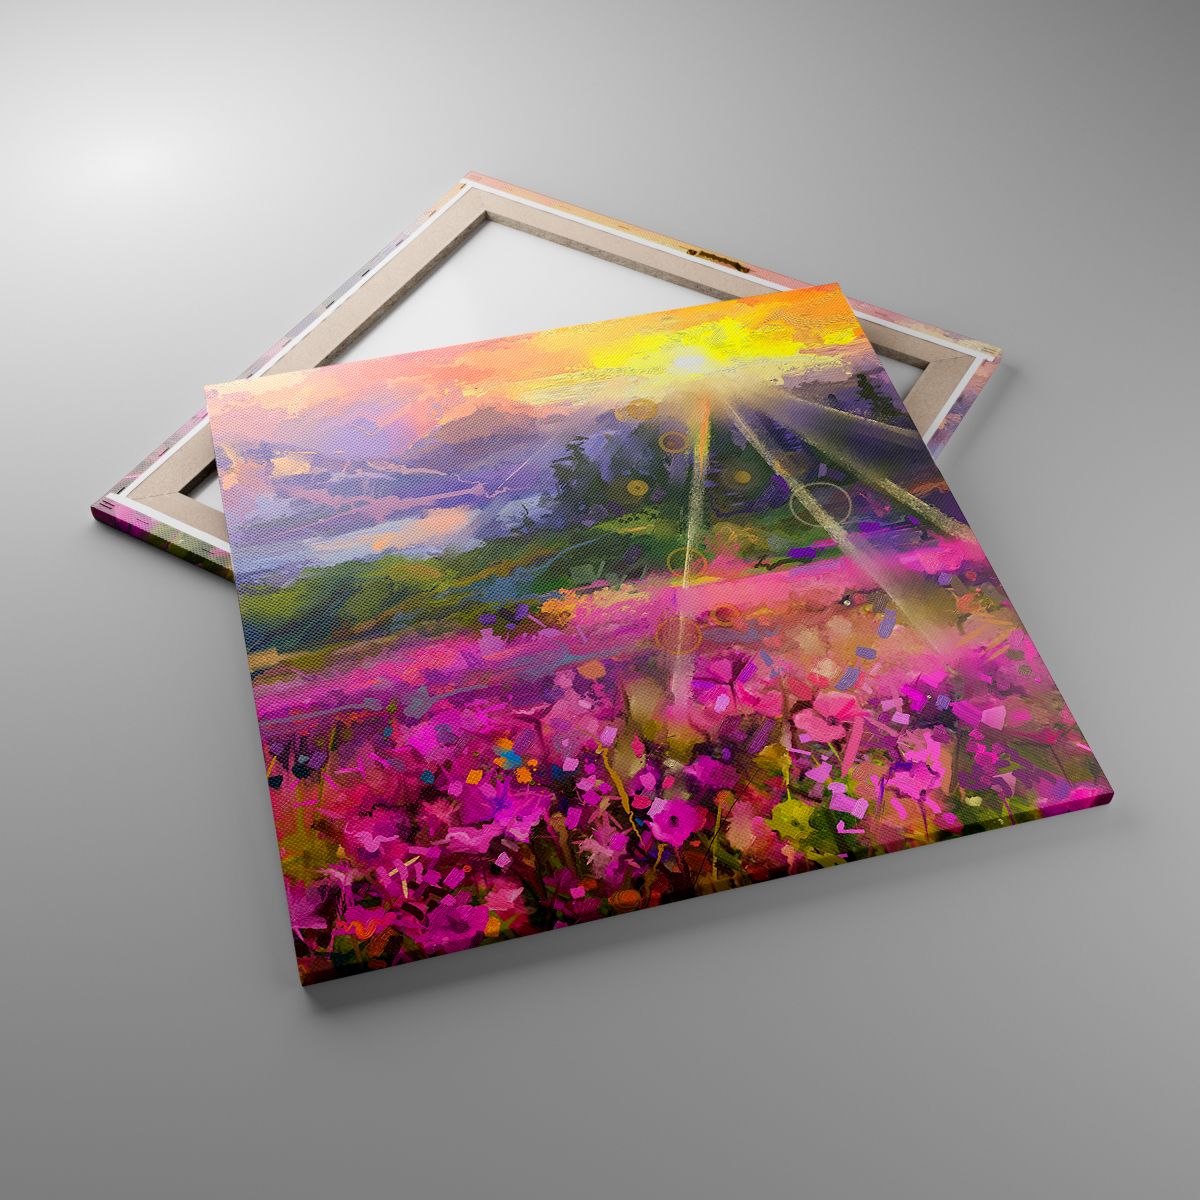 Leinwandbild Abstraktion, Leinwandbild Landschaft, Leinwandbild Blumen, Leinwandbild Berge, Leinwandbild Kunst